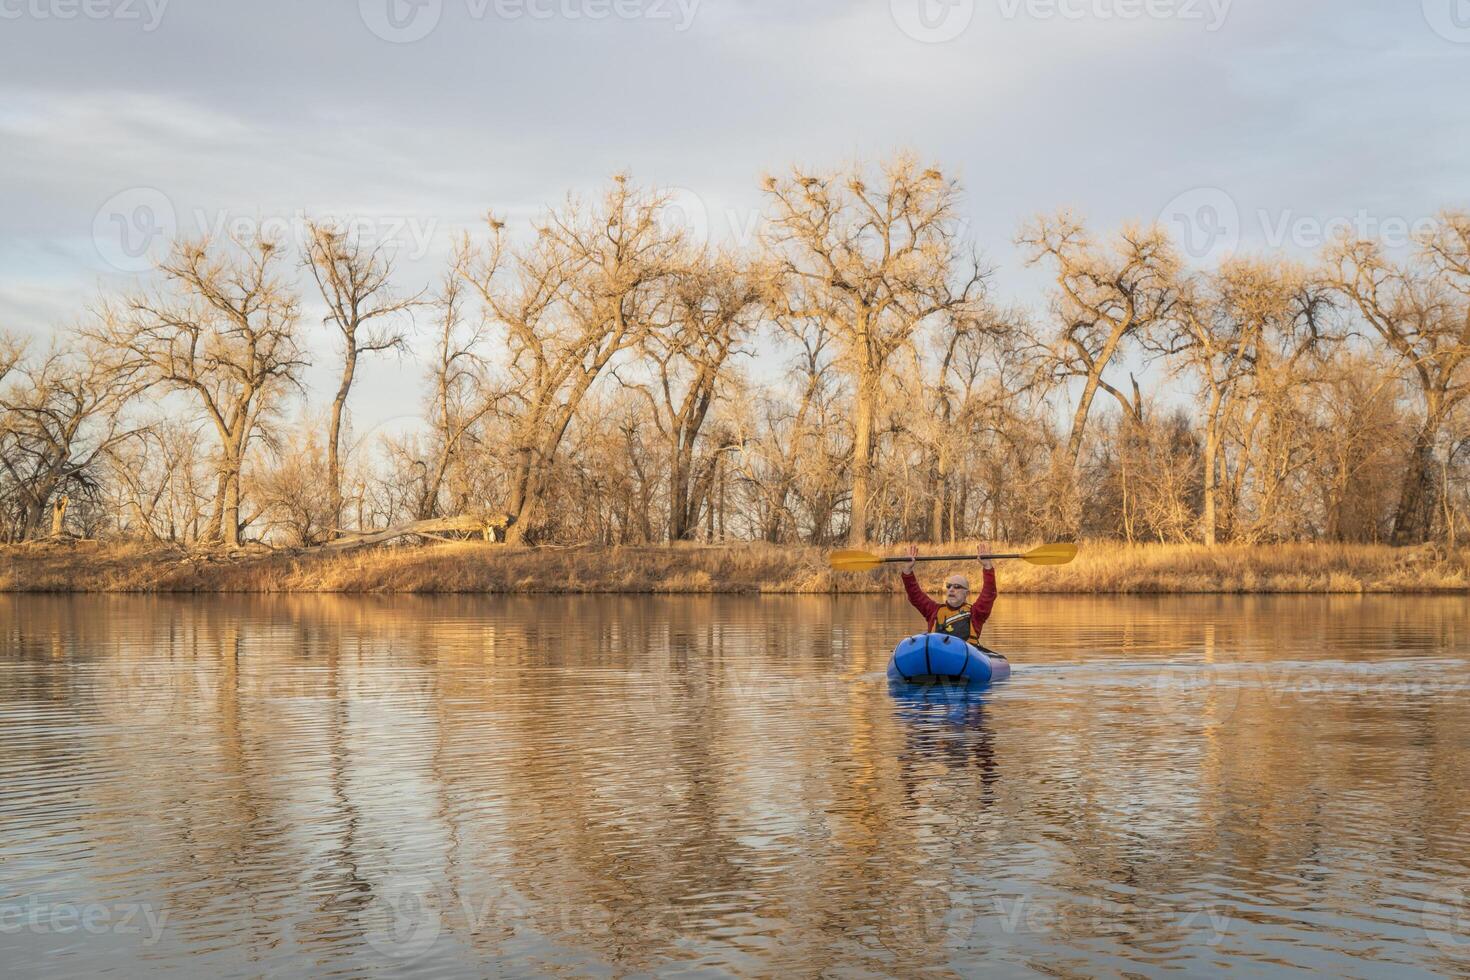 mayor masculino es remar un inflable packraft en un calma lago con garza colonia de grajos en temprano primavera en del Norte Colorado foto